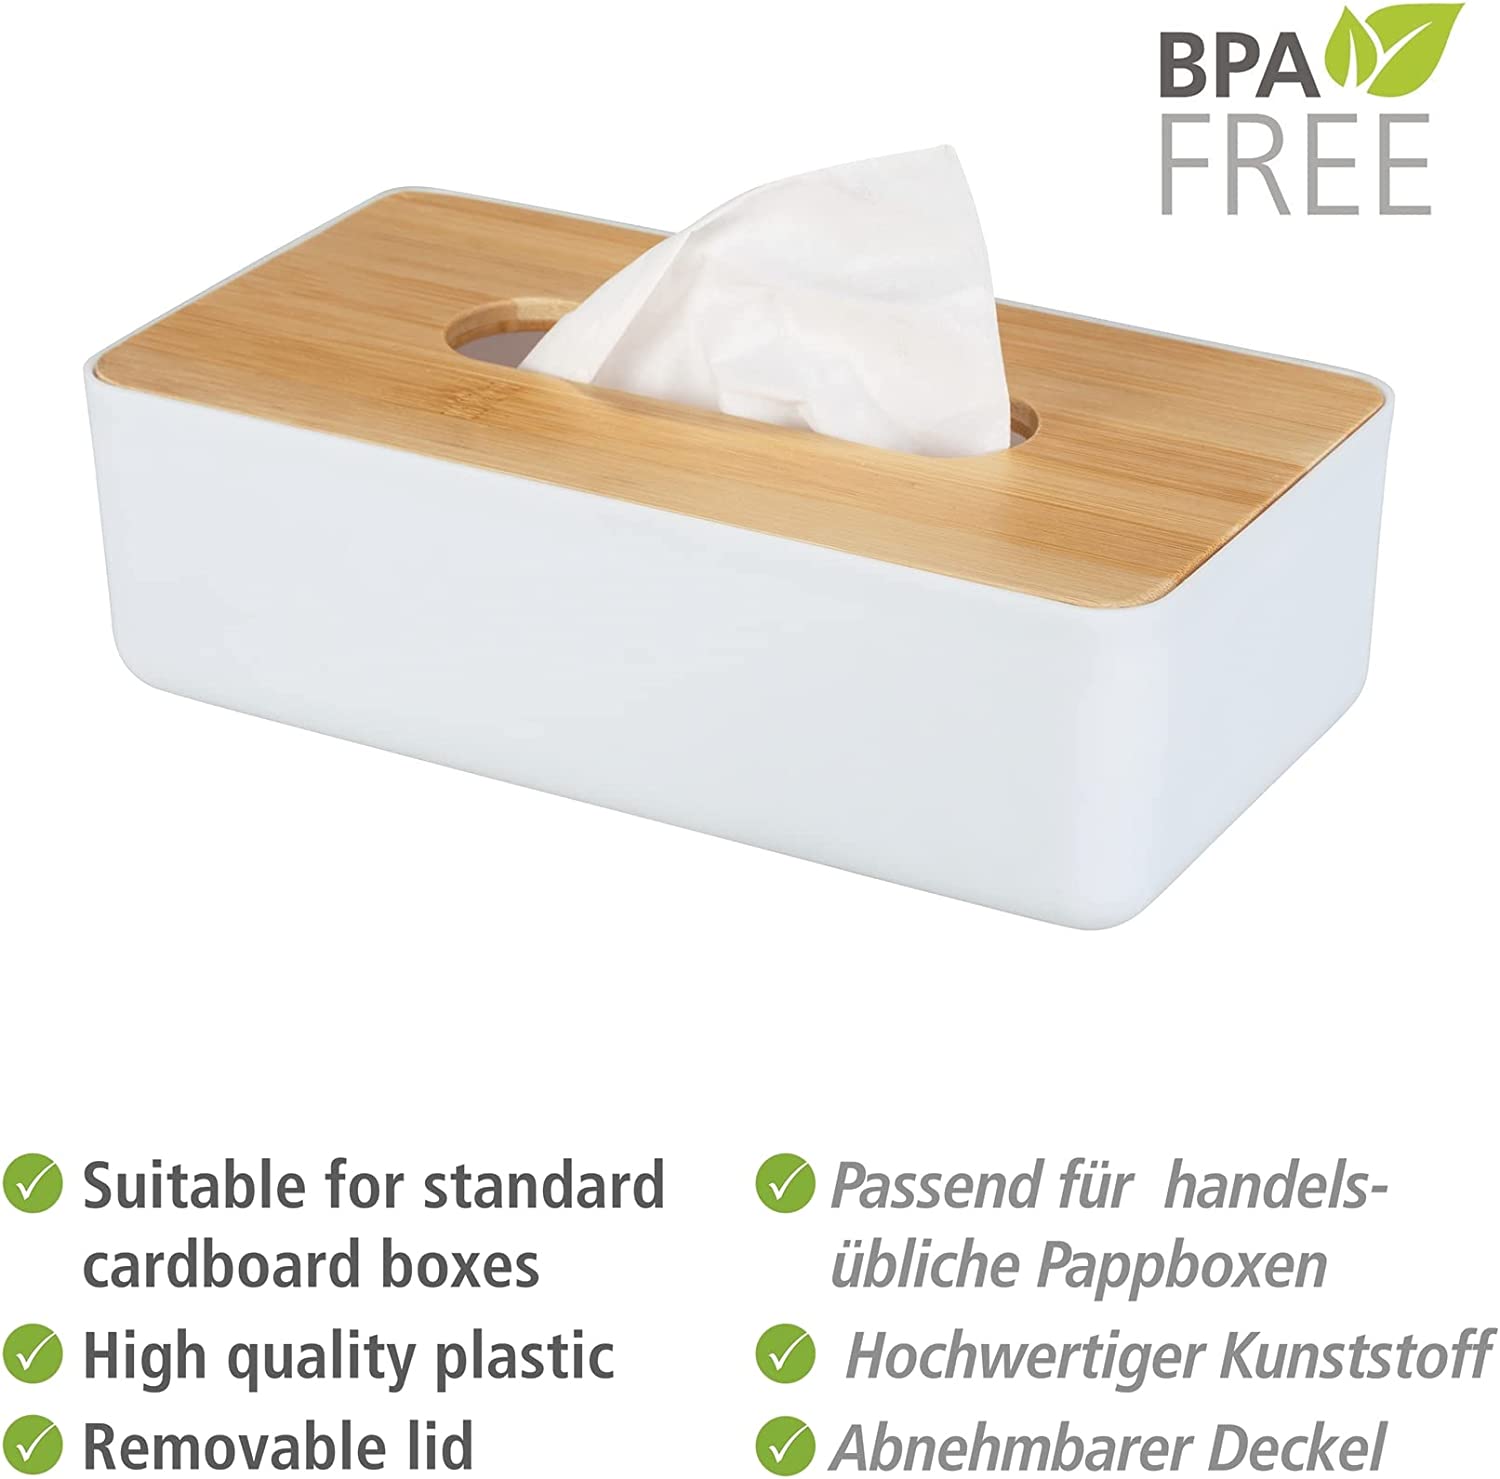 Kosmetiktuchbox Rotello, Box für Kosmetiktücher oder Taschentücher, Kunststoffbox mit Deckel aus Bambus, leichte Entnahme, zum Verstauen handelsüblicher Pappboxen, 24 x 7,5 x 12,7 cm, Weiß/Natur